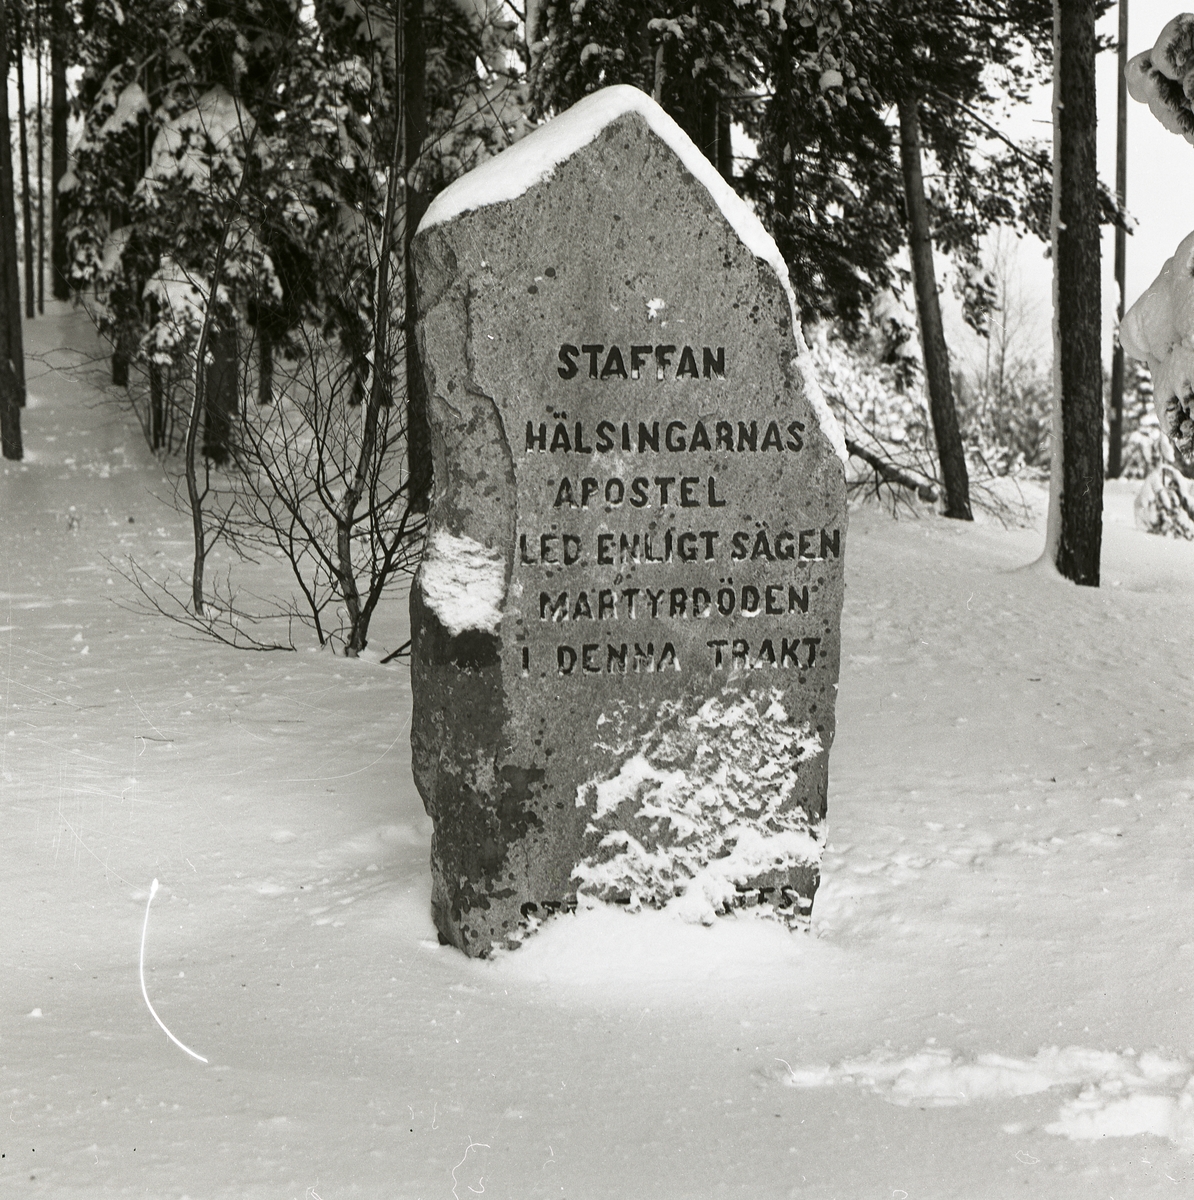 Minnesmonumentet "Staffanstenen" med inskription om hälsinglands apostel, januari 1984.